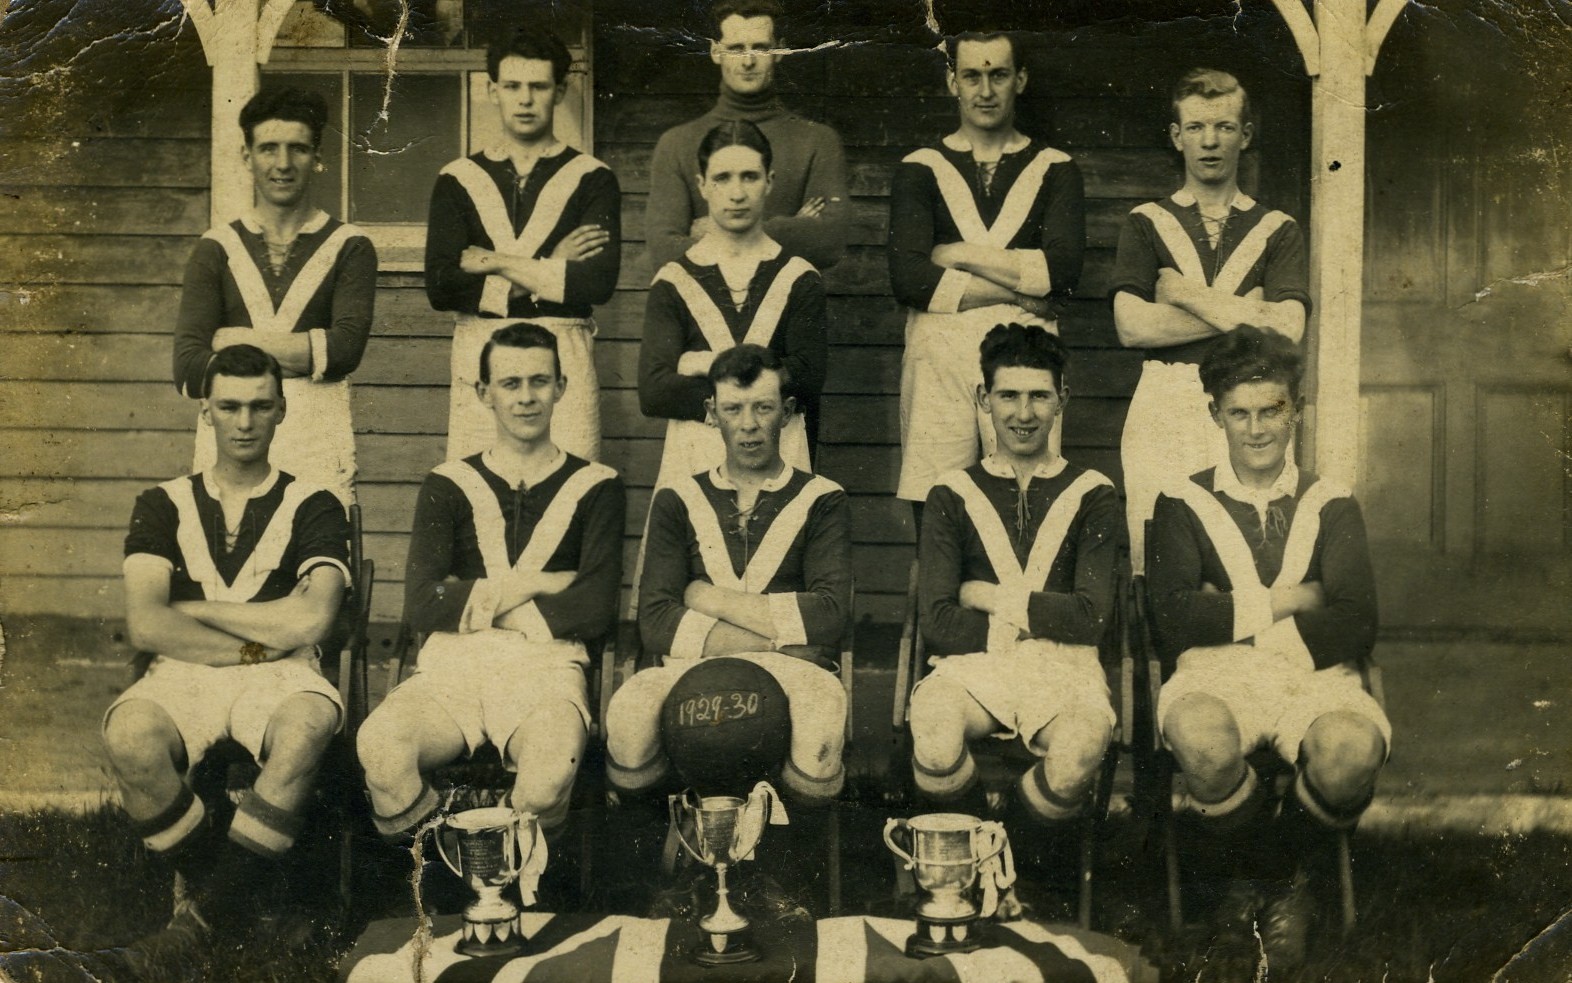 Football team 1929-30